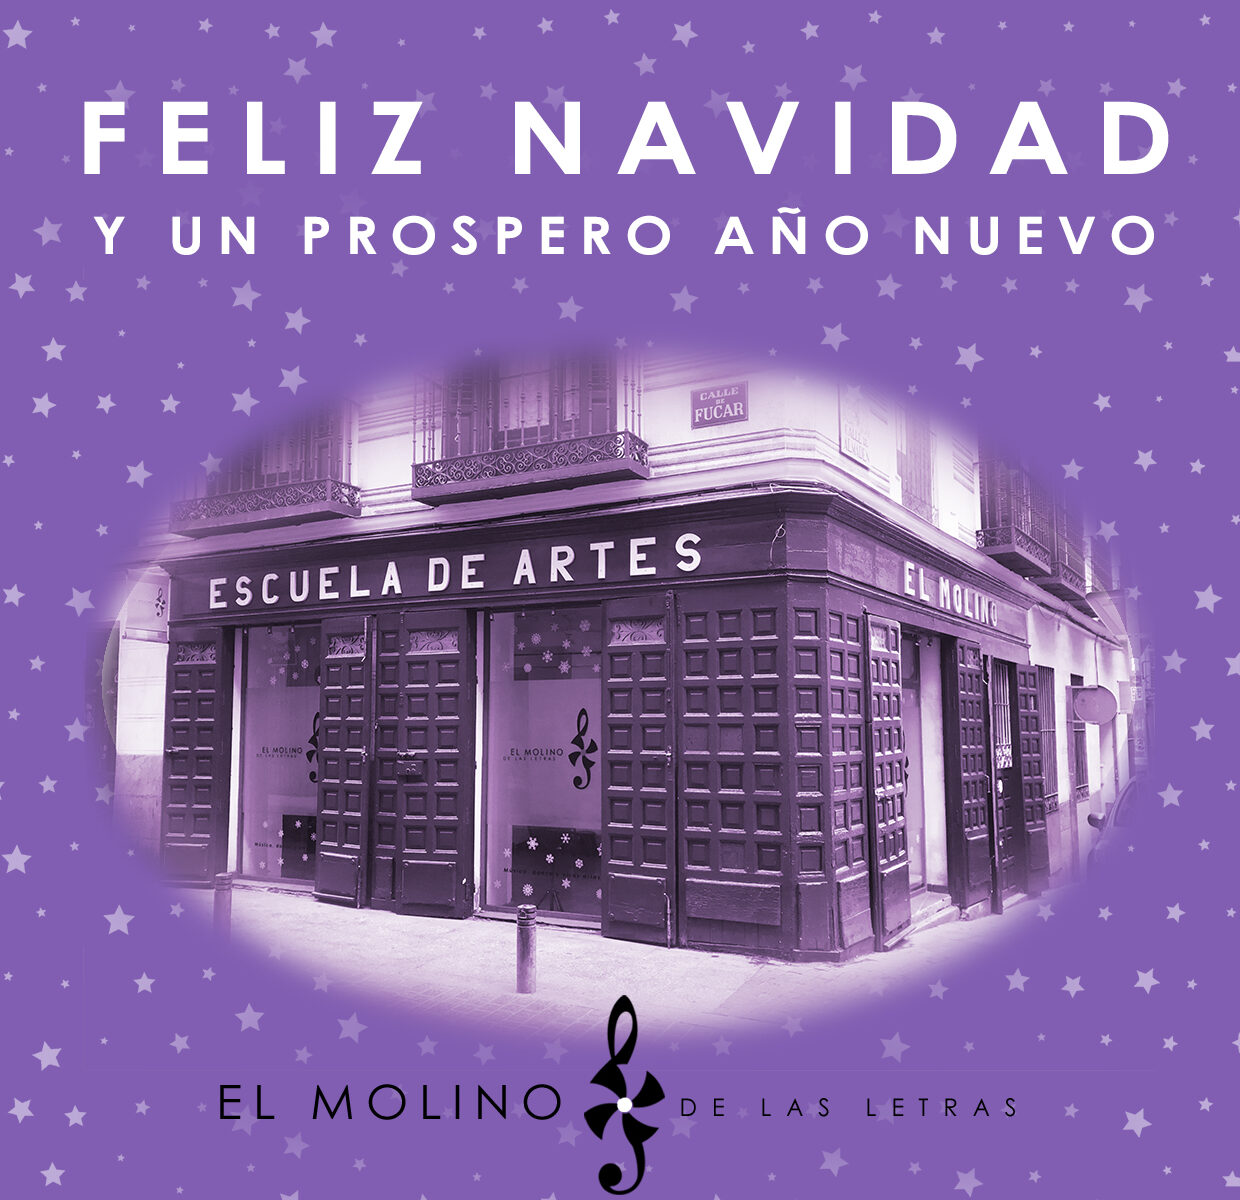 Feliz Navidad desde El Molino de Las Letras Escuela de Música, Danza y otras Artes en el centro de Madrid